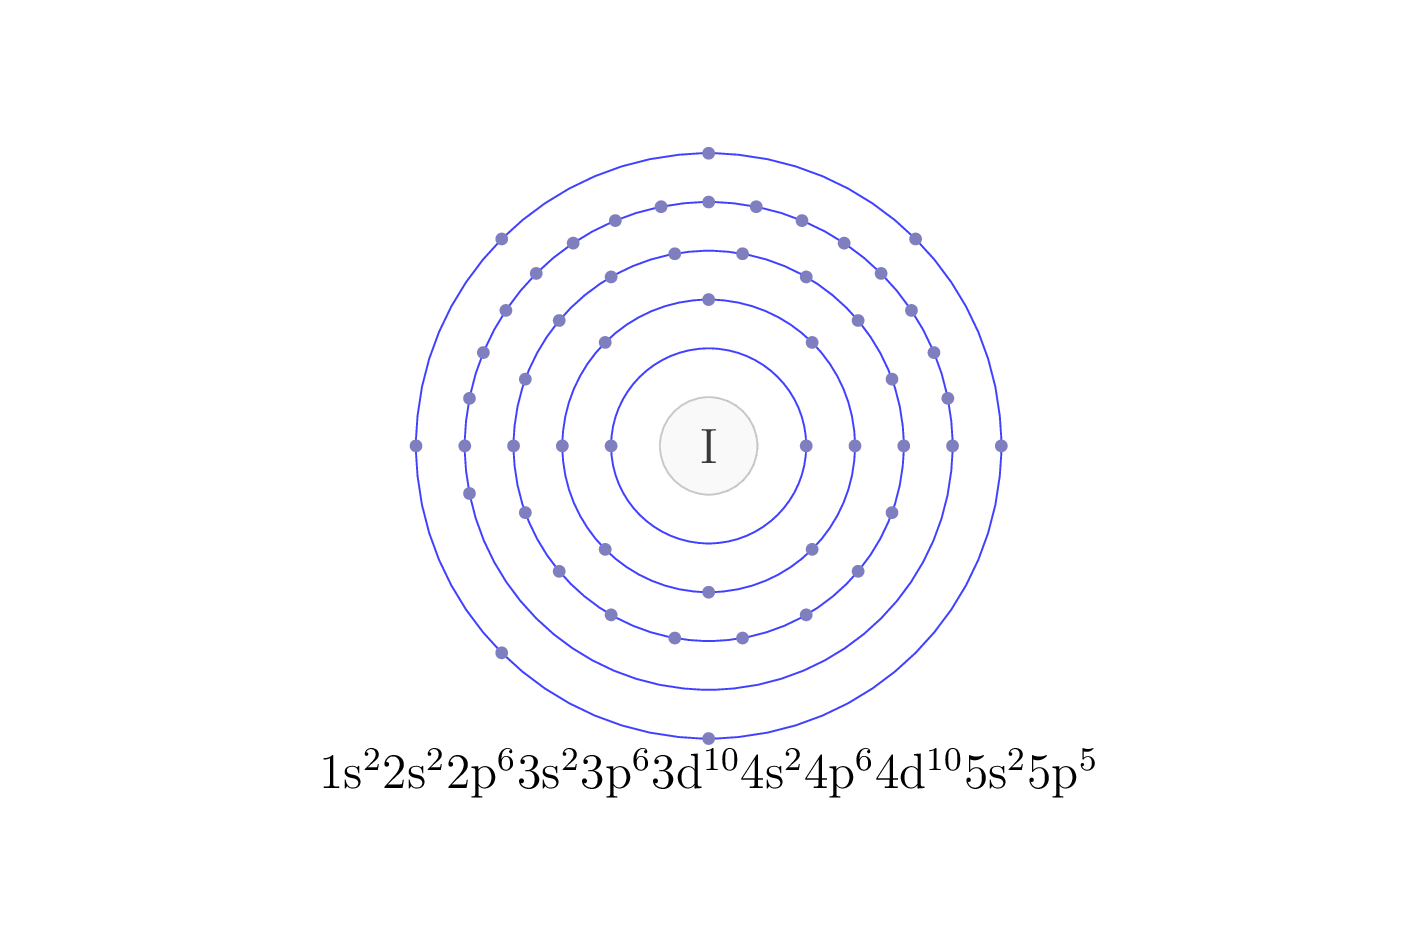 electron configuration of element I